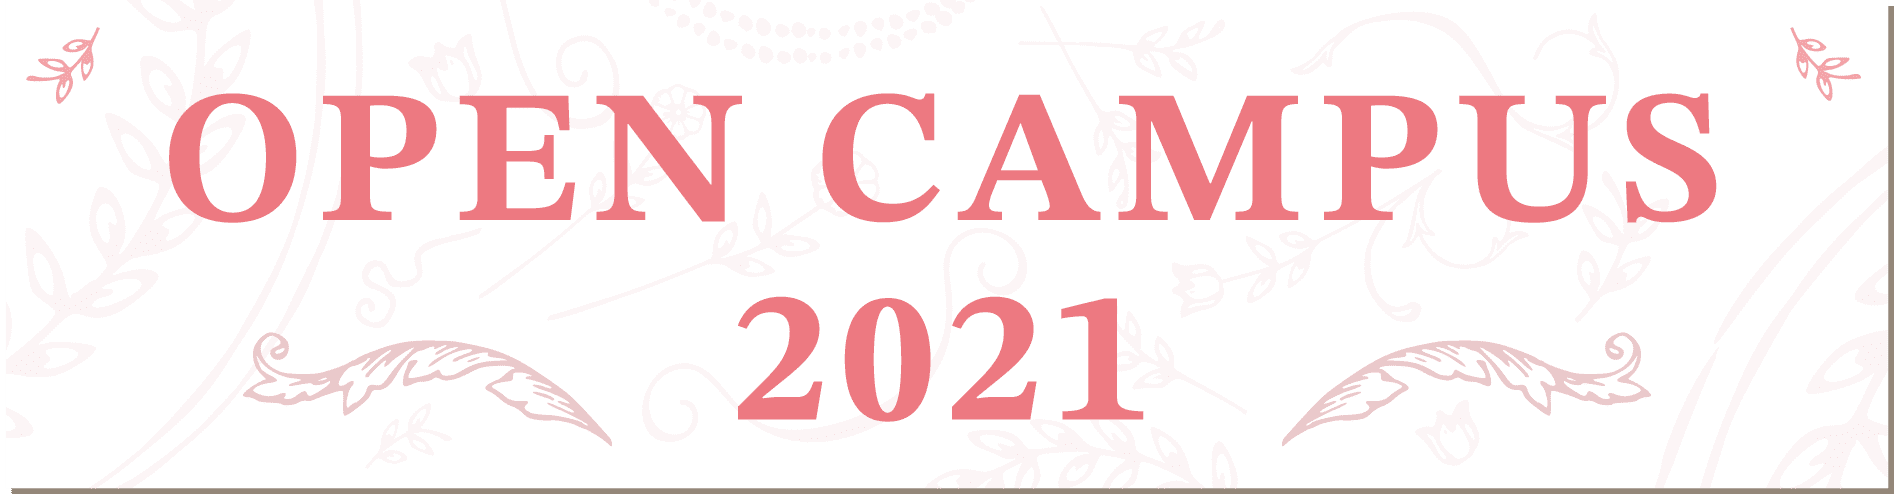 OPEN CAMPUS 2021